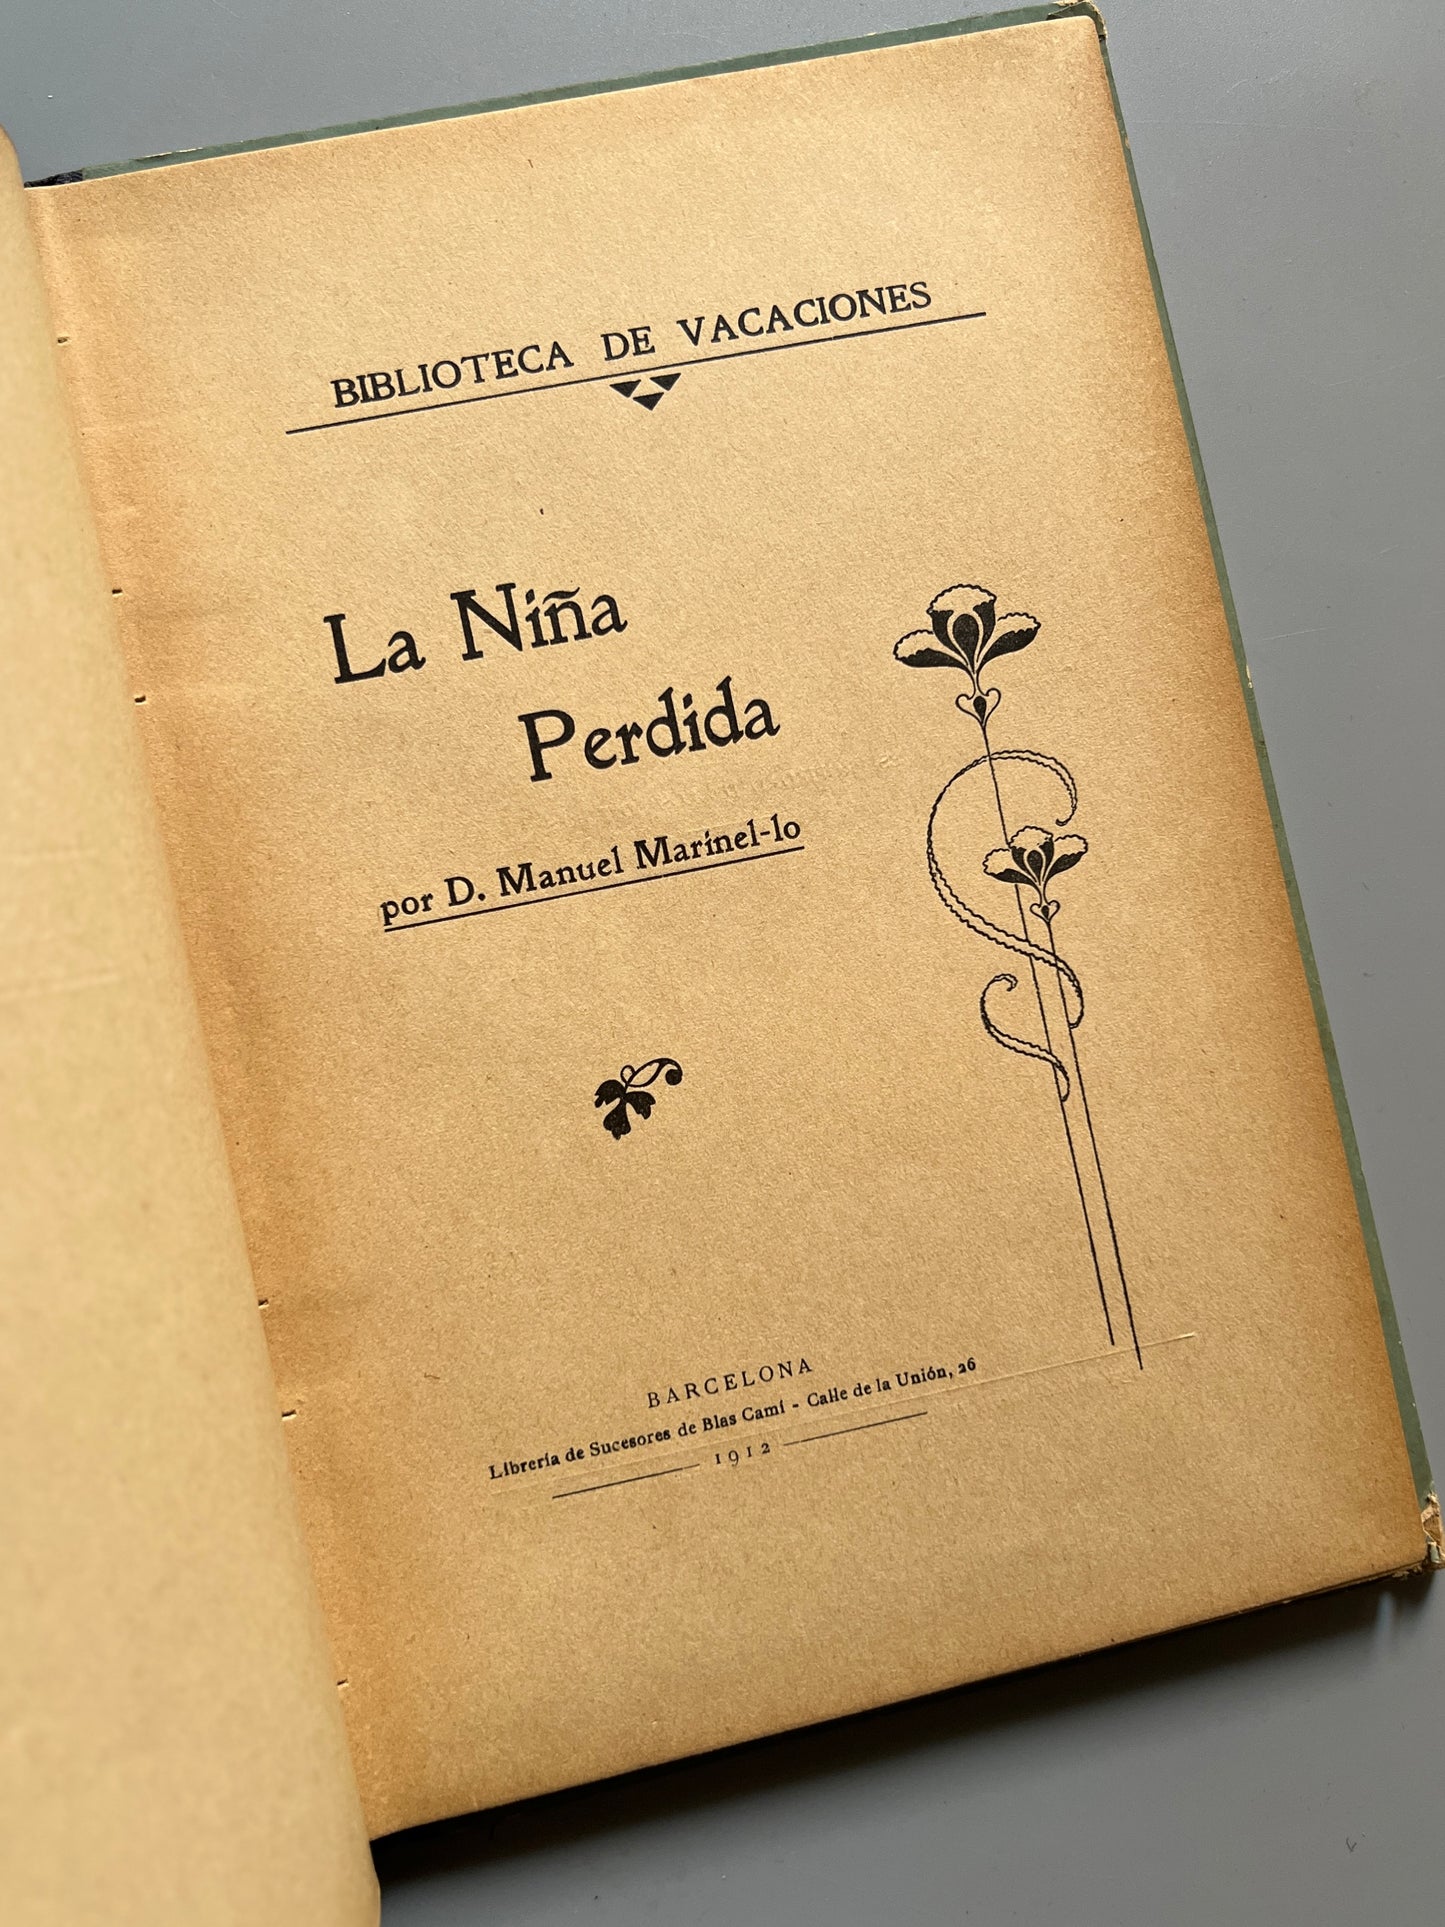 La niña perdida, Manuel Marinel·lo - Biblioteca de Vacaciones, 1912